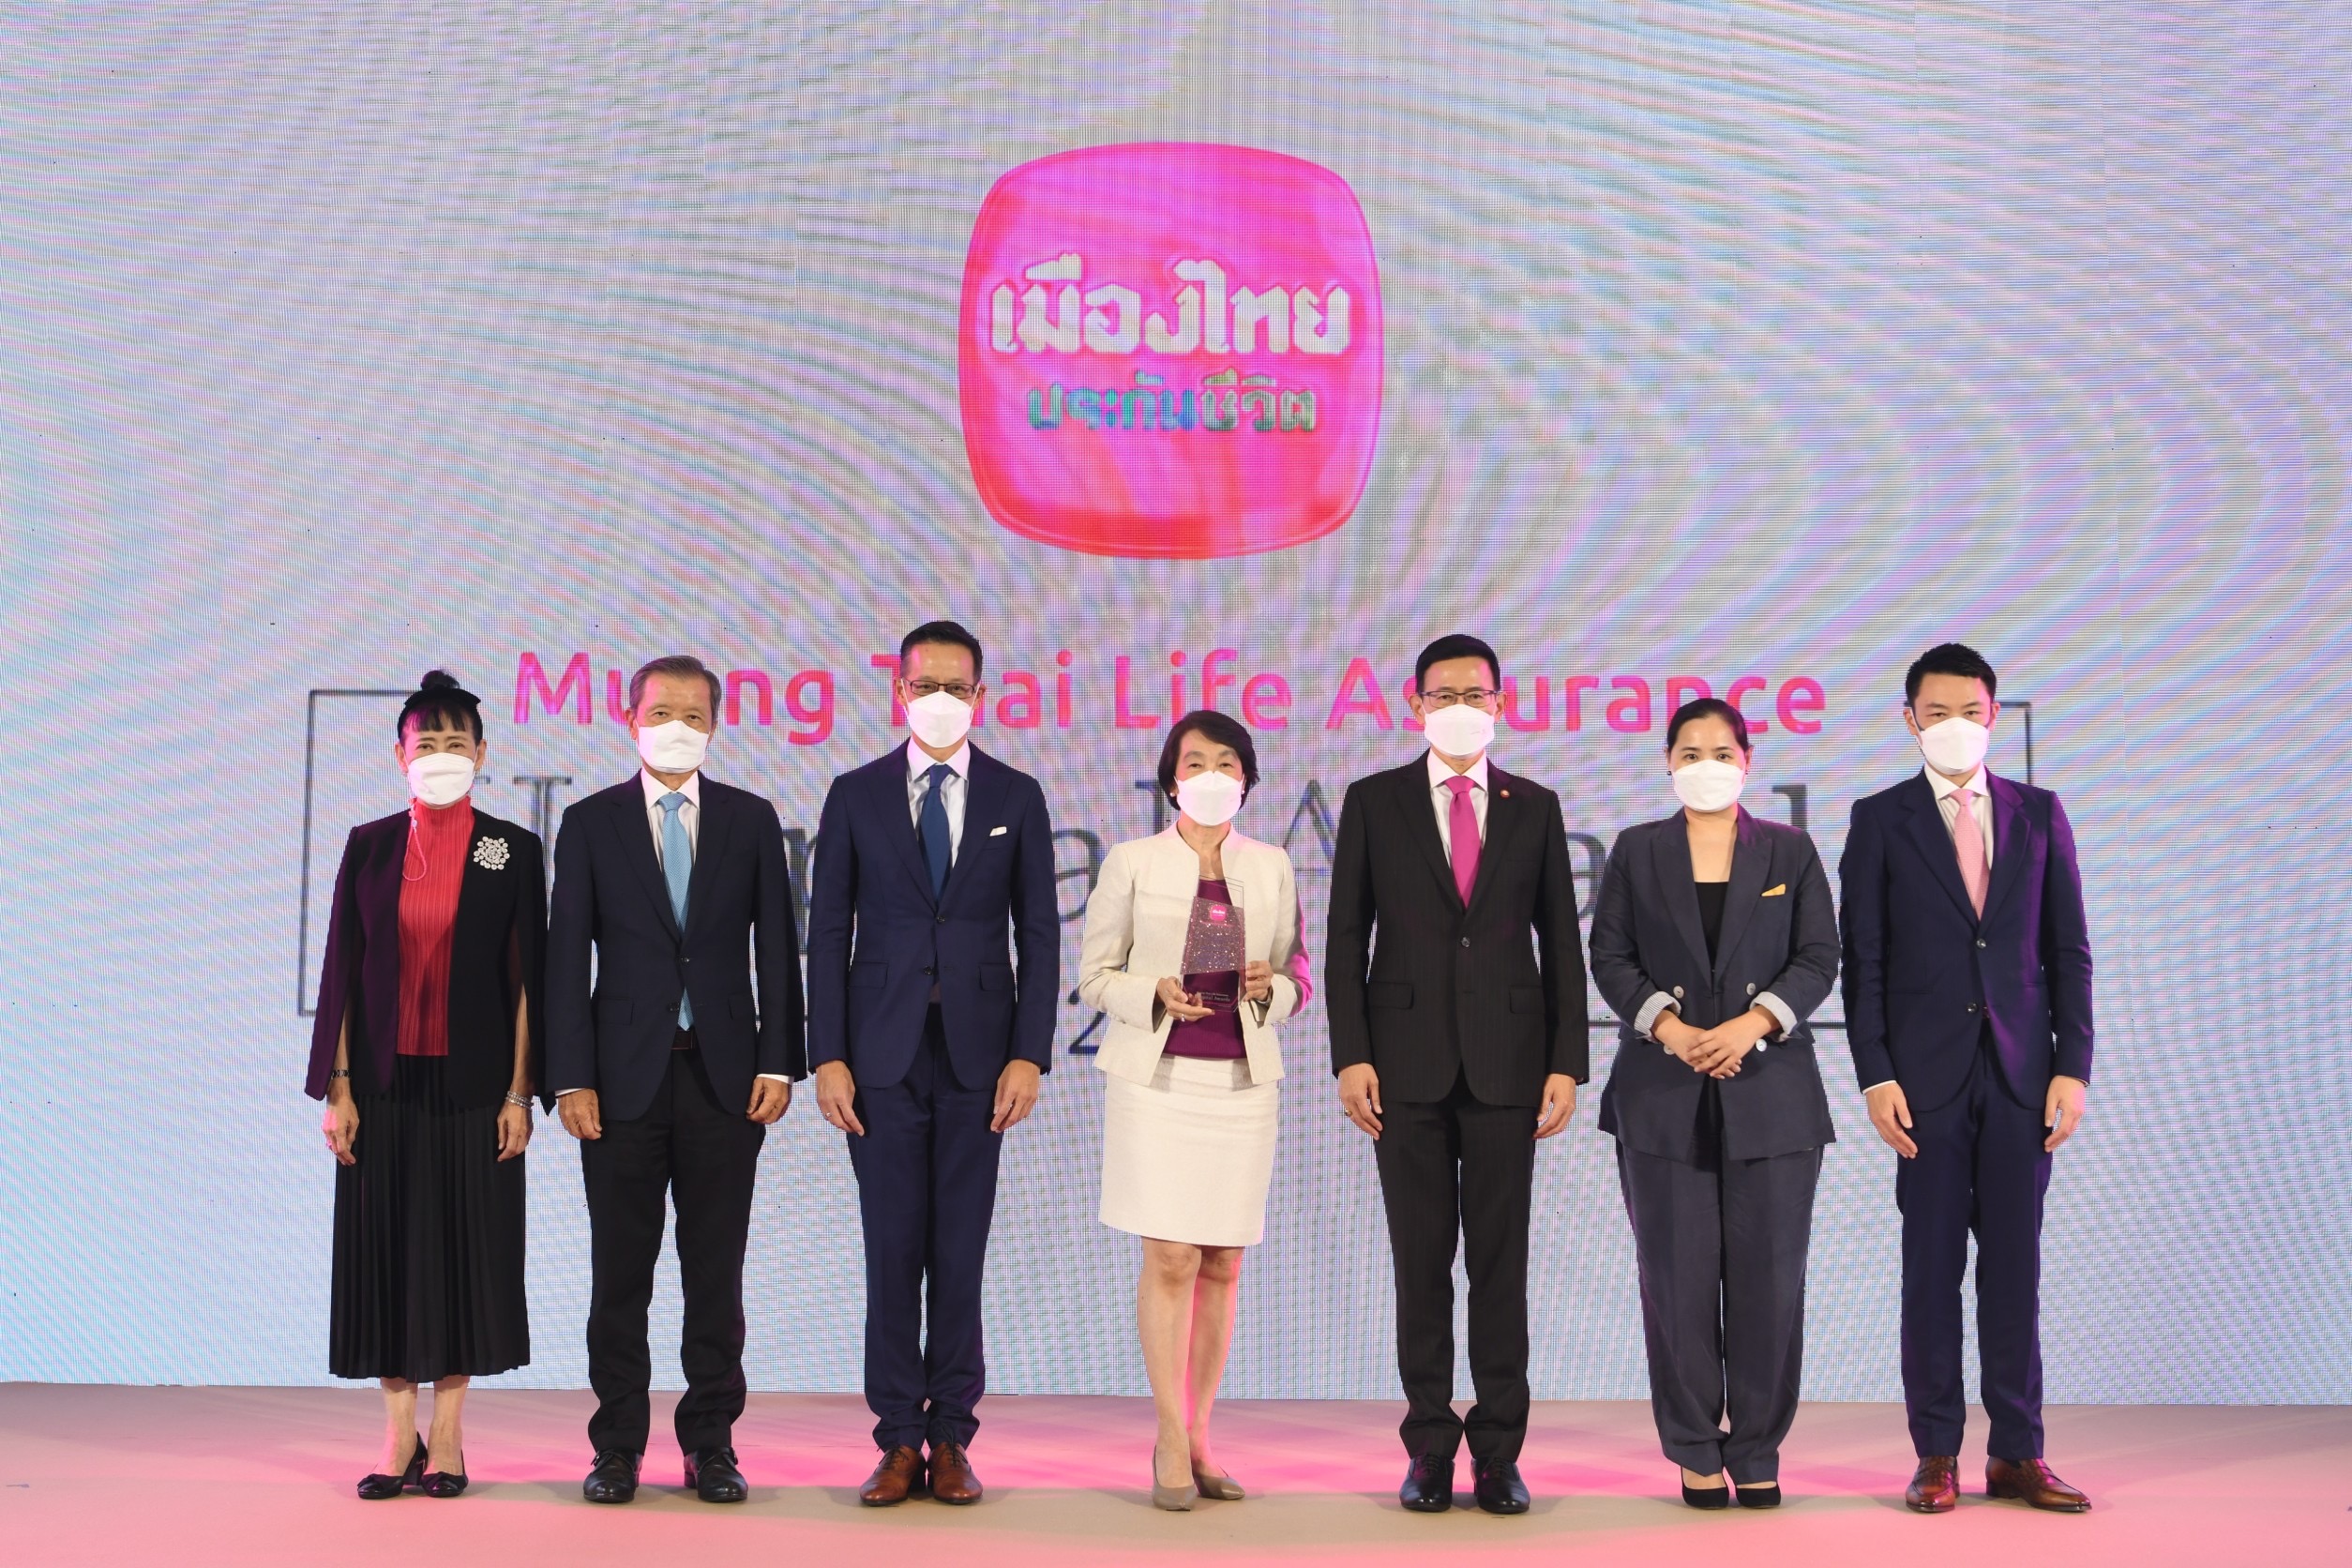 เมืองไทยประกันชีวิต จัดพิธีมอบรางวัลเกียรติยศ “Muang Thai Life Assurance Hospital Awards 2021” มุ่งยกระดับมาตรฐานบริการที่เป็นเลิศทุกมิติ สู่ความเป็นหนึ่งในใจลูกค้าคนสำคัญ